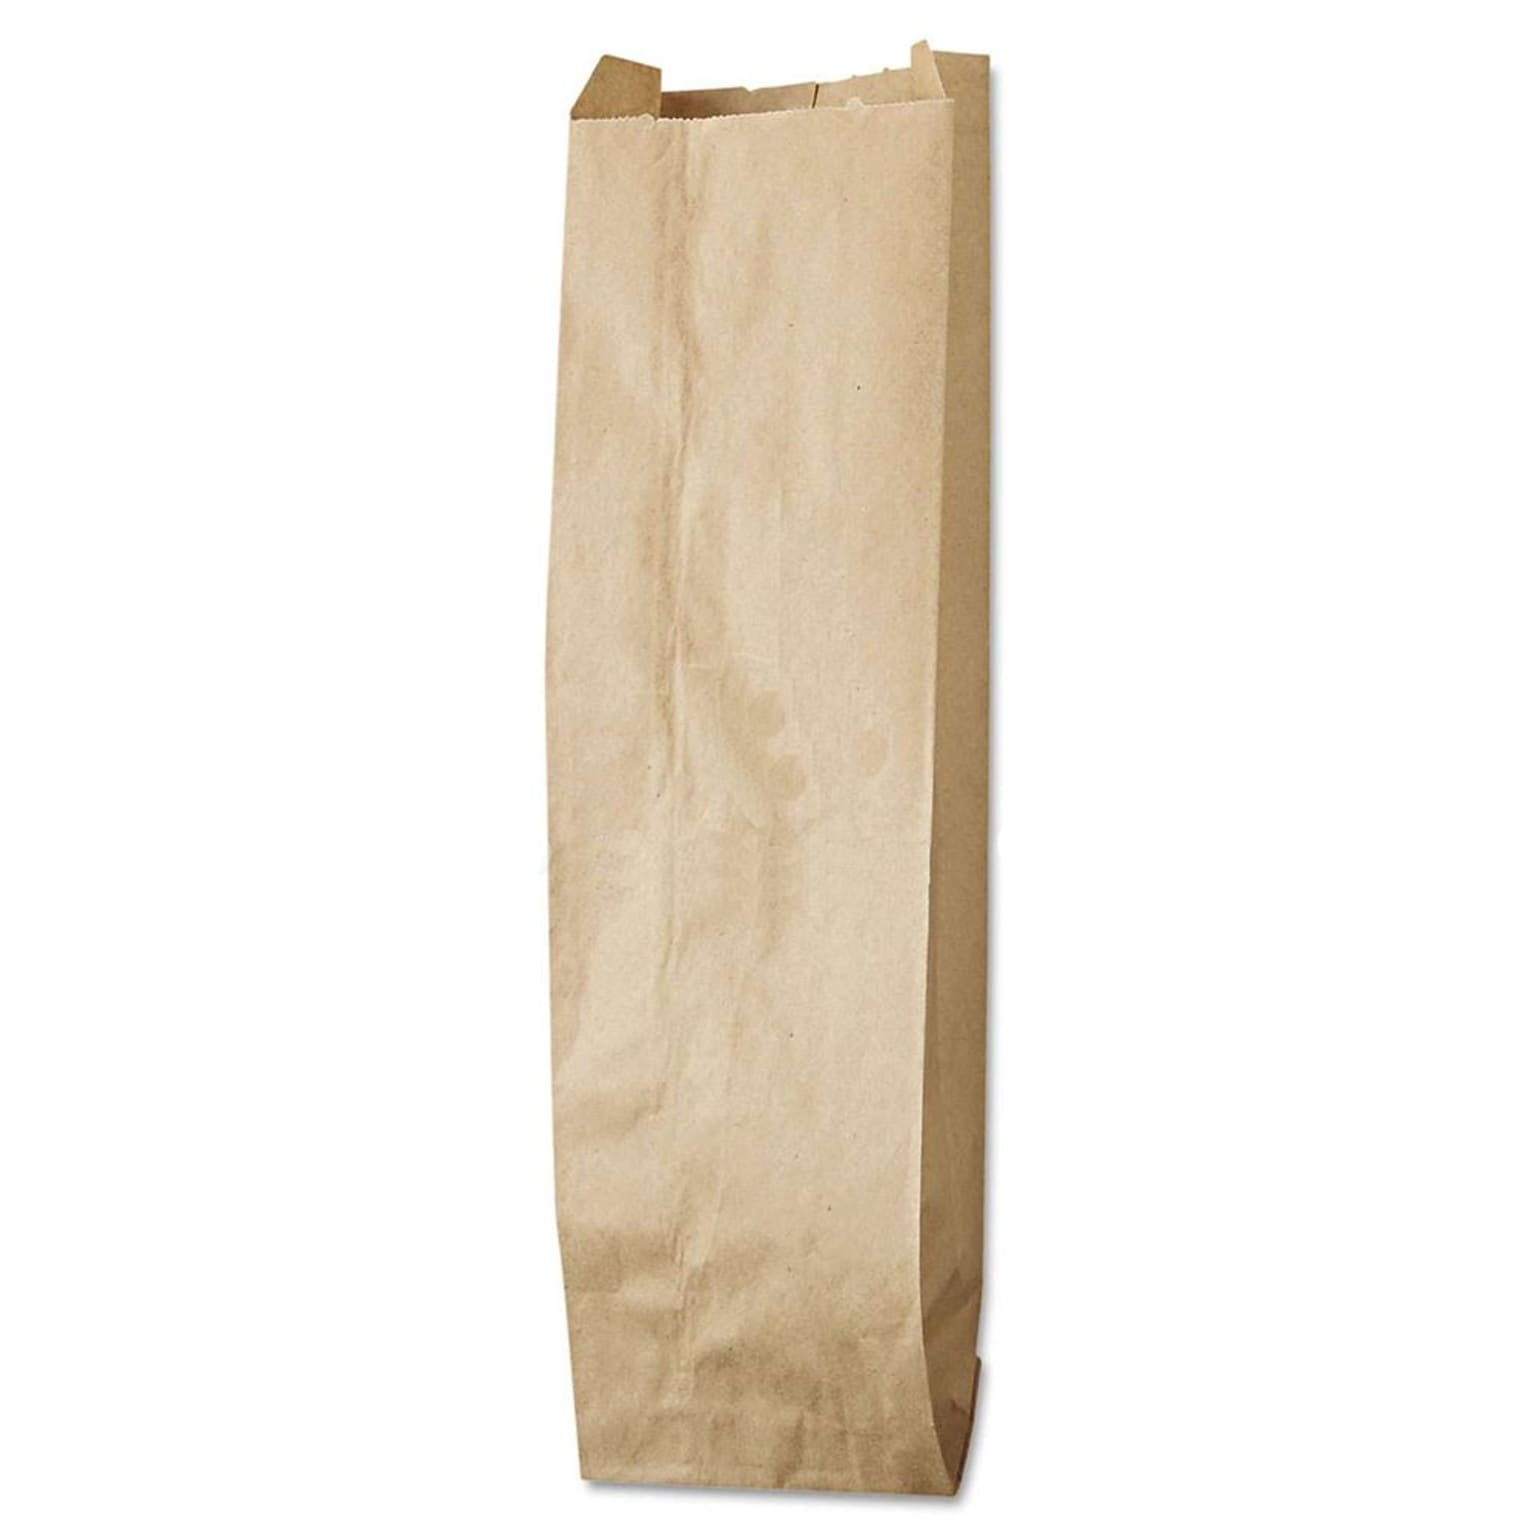 Duro 16 x 4.5 x 2.5 Paper Shopping Bag, Brown, 500/Pack (BAG LQQUART-500)